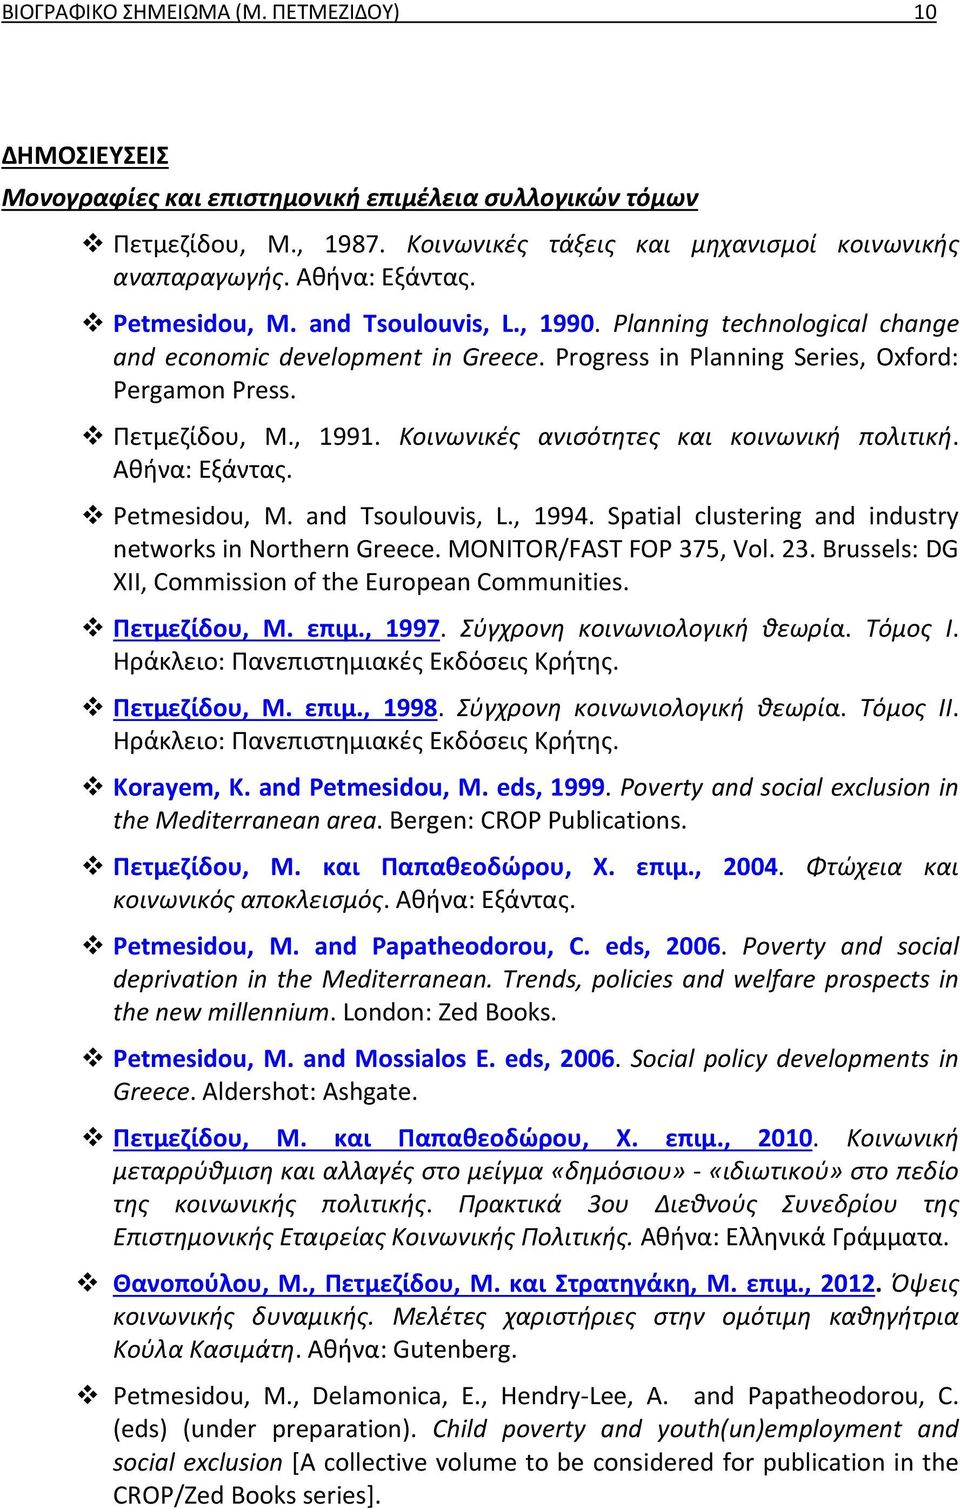 Αθήνα: Εξάντας. Petmesidou, M. and Tsoulouvis, L., 1994. Spatial clustering and industry networks in Northern Greece. MONITOR/FAST FOP 375, Vol. 23.